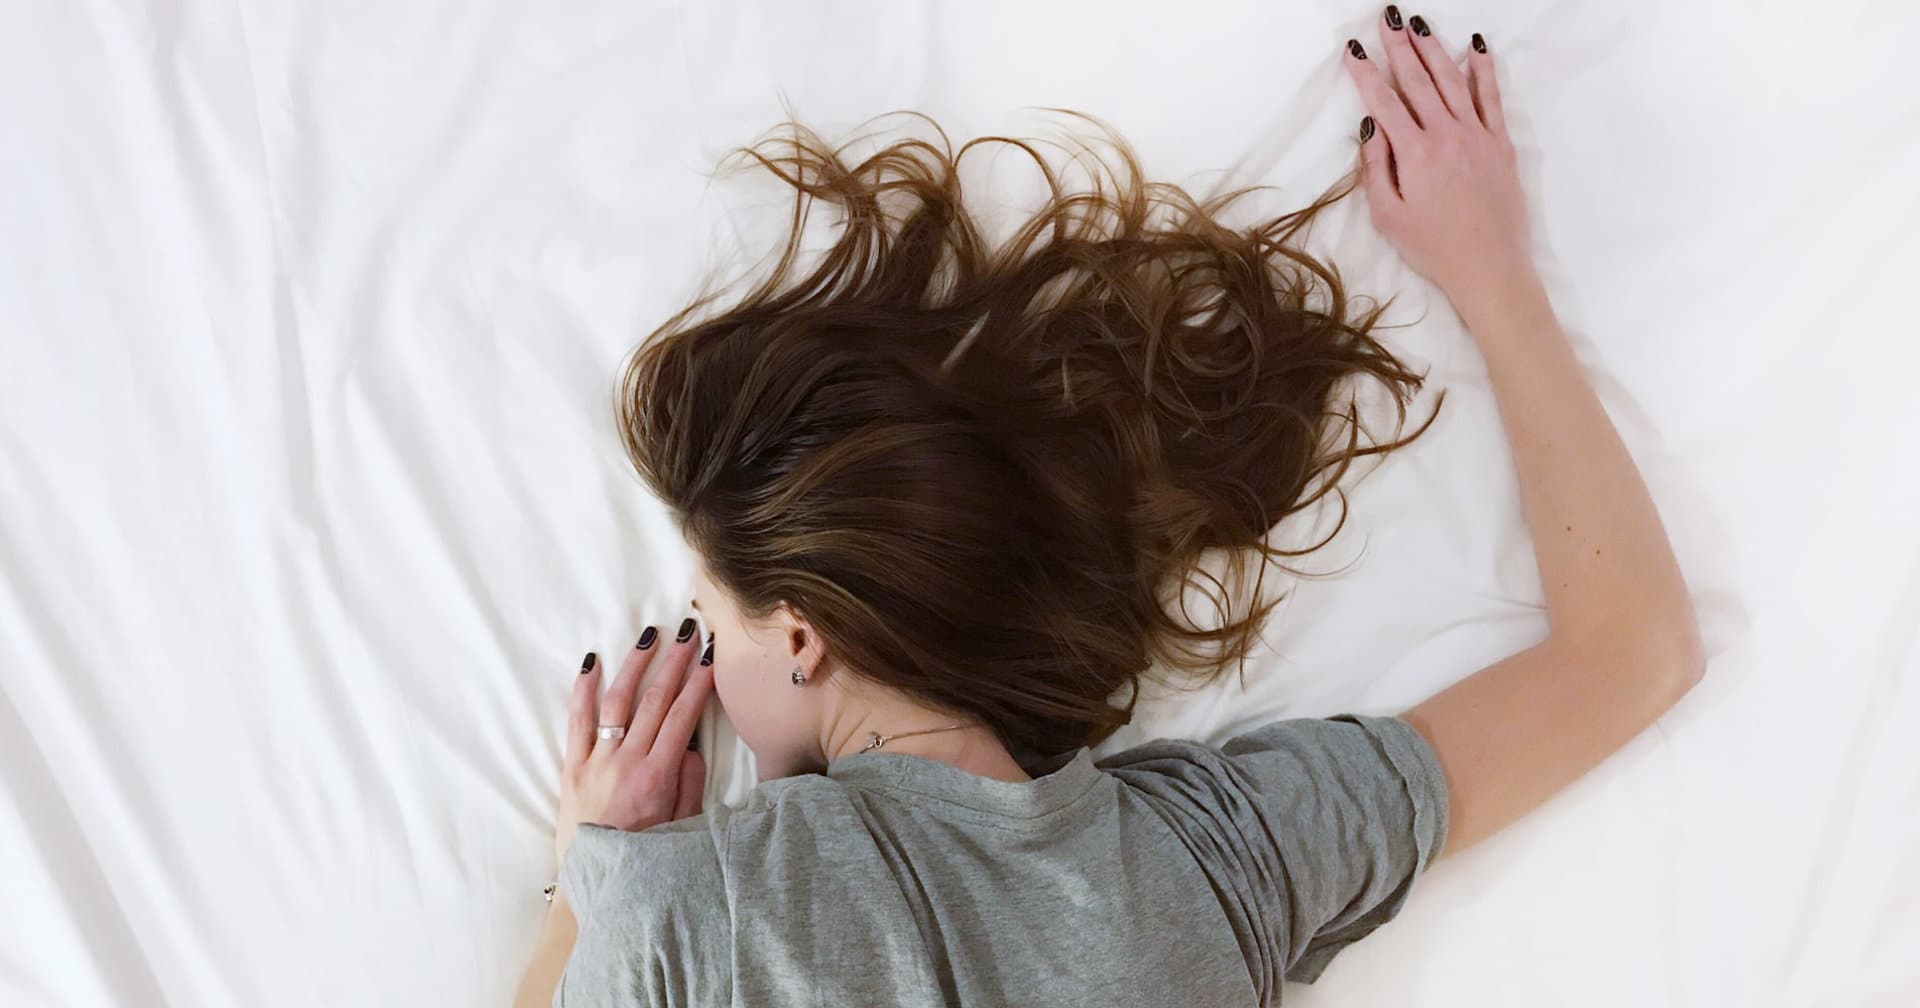  مضرات خوابیدن با موهای خیس